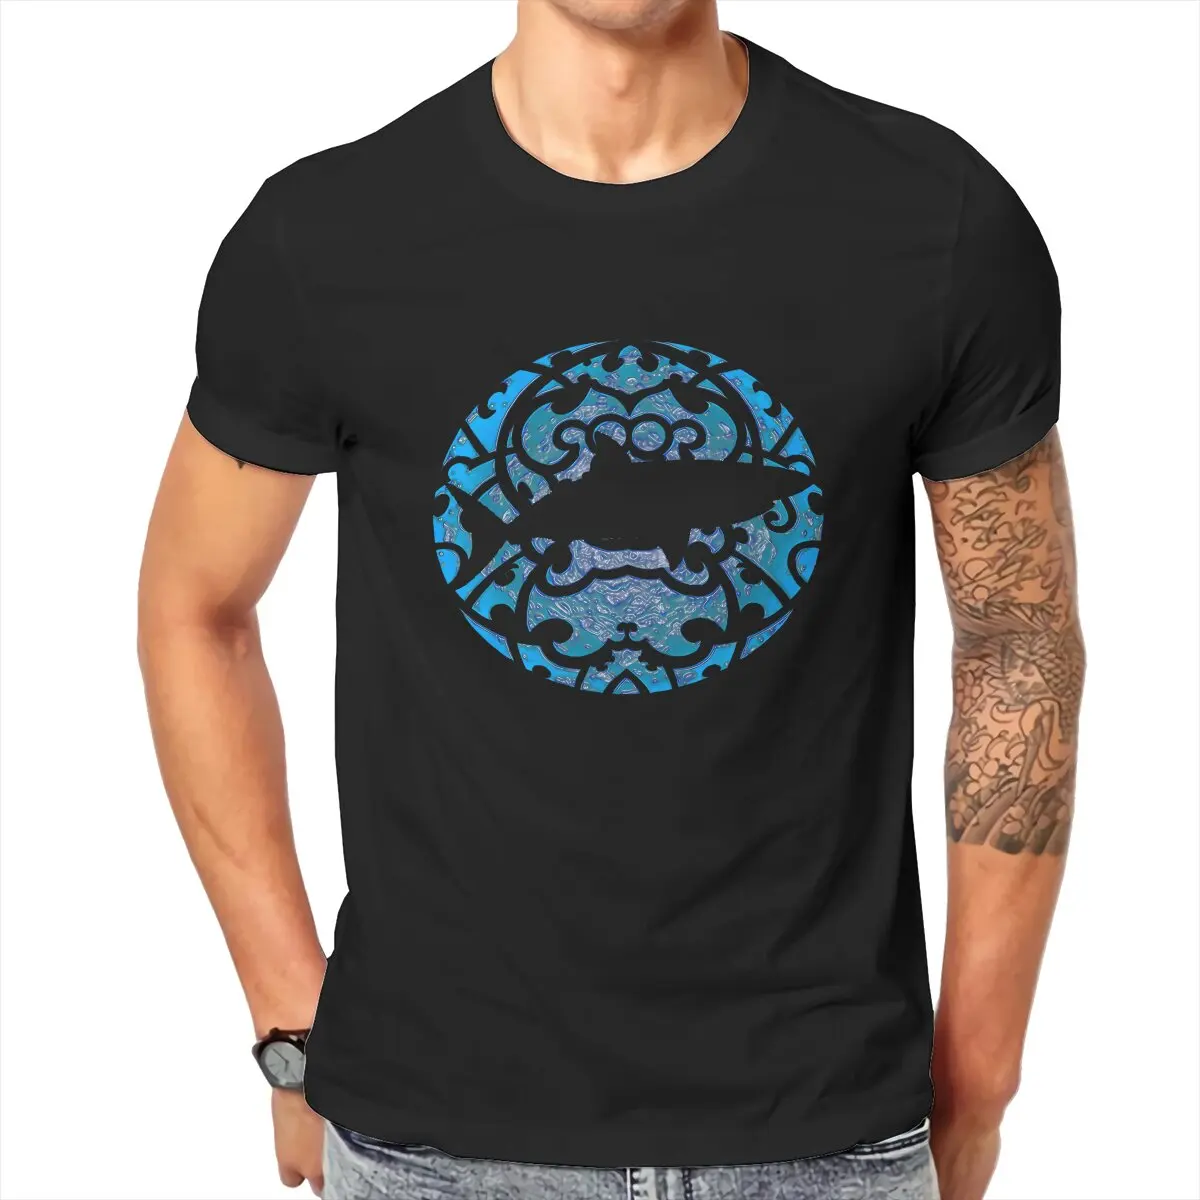 

Футболка Keeper в стиле хип-хоп, топы с принтом акулы для подводного плавания, футболка для отдыха, Мужская футболка, уникальная идея для подарка